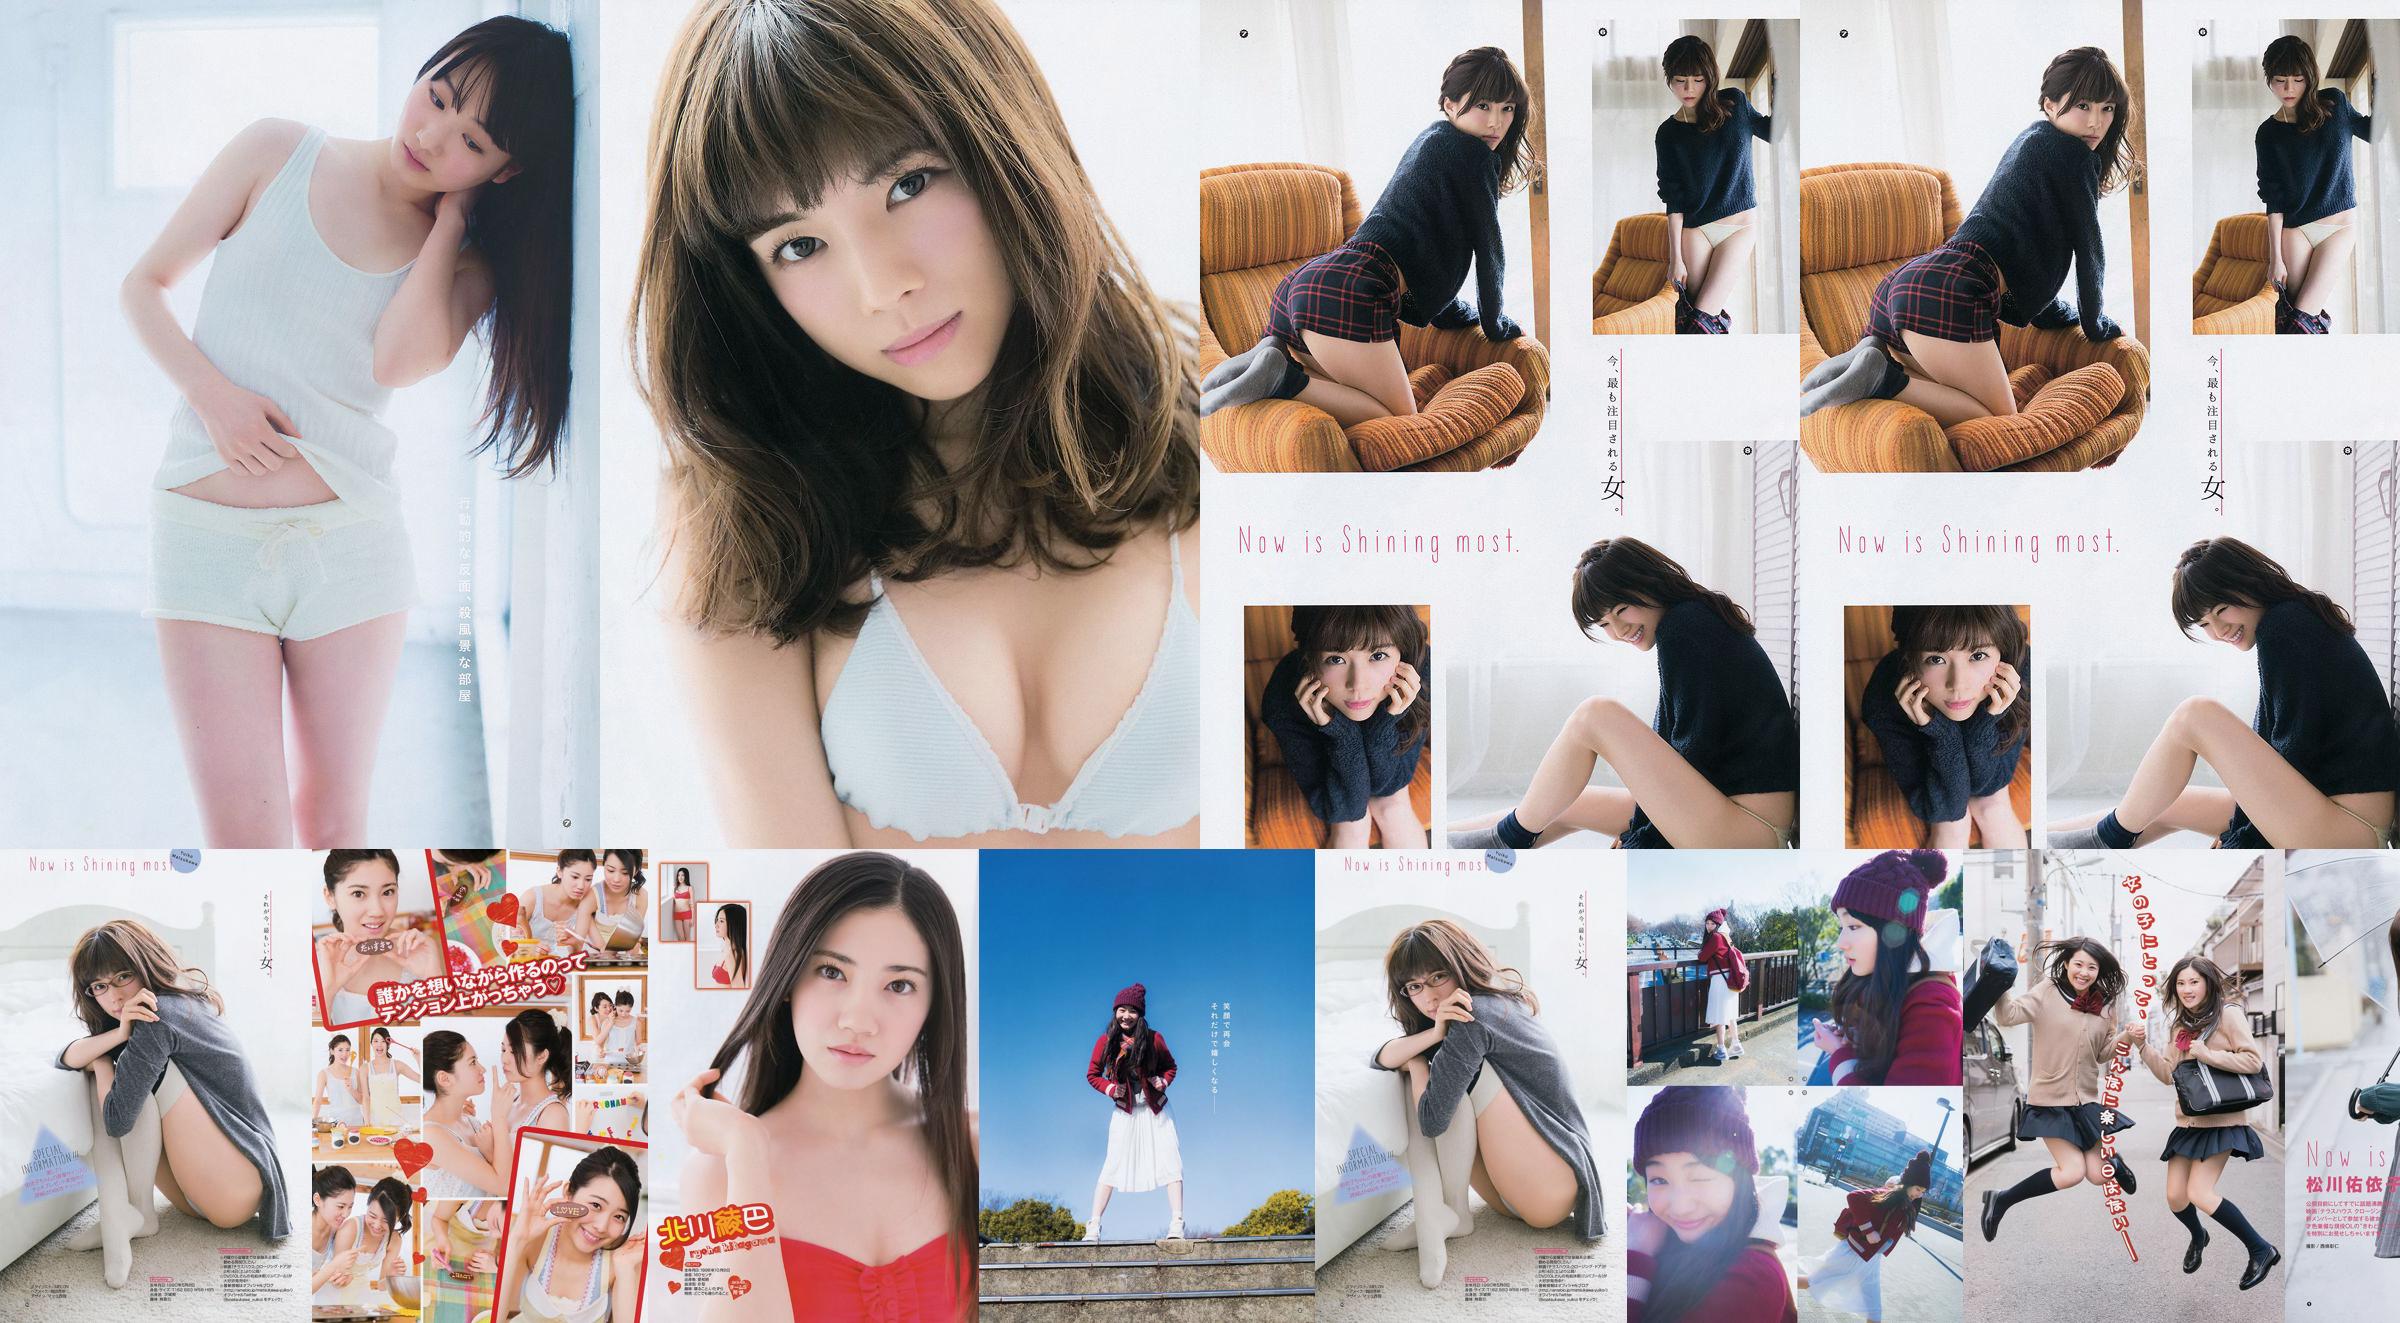 [Gangan Muda] Ryoha Kitagawa Ami Miyamae Yuiko Matsukawa Narumi Akizuki 2015 No.04 Foto No.4770ec Halaman 1